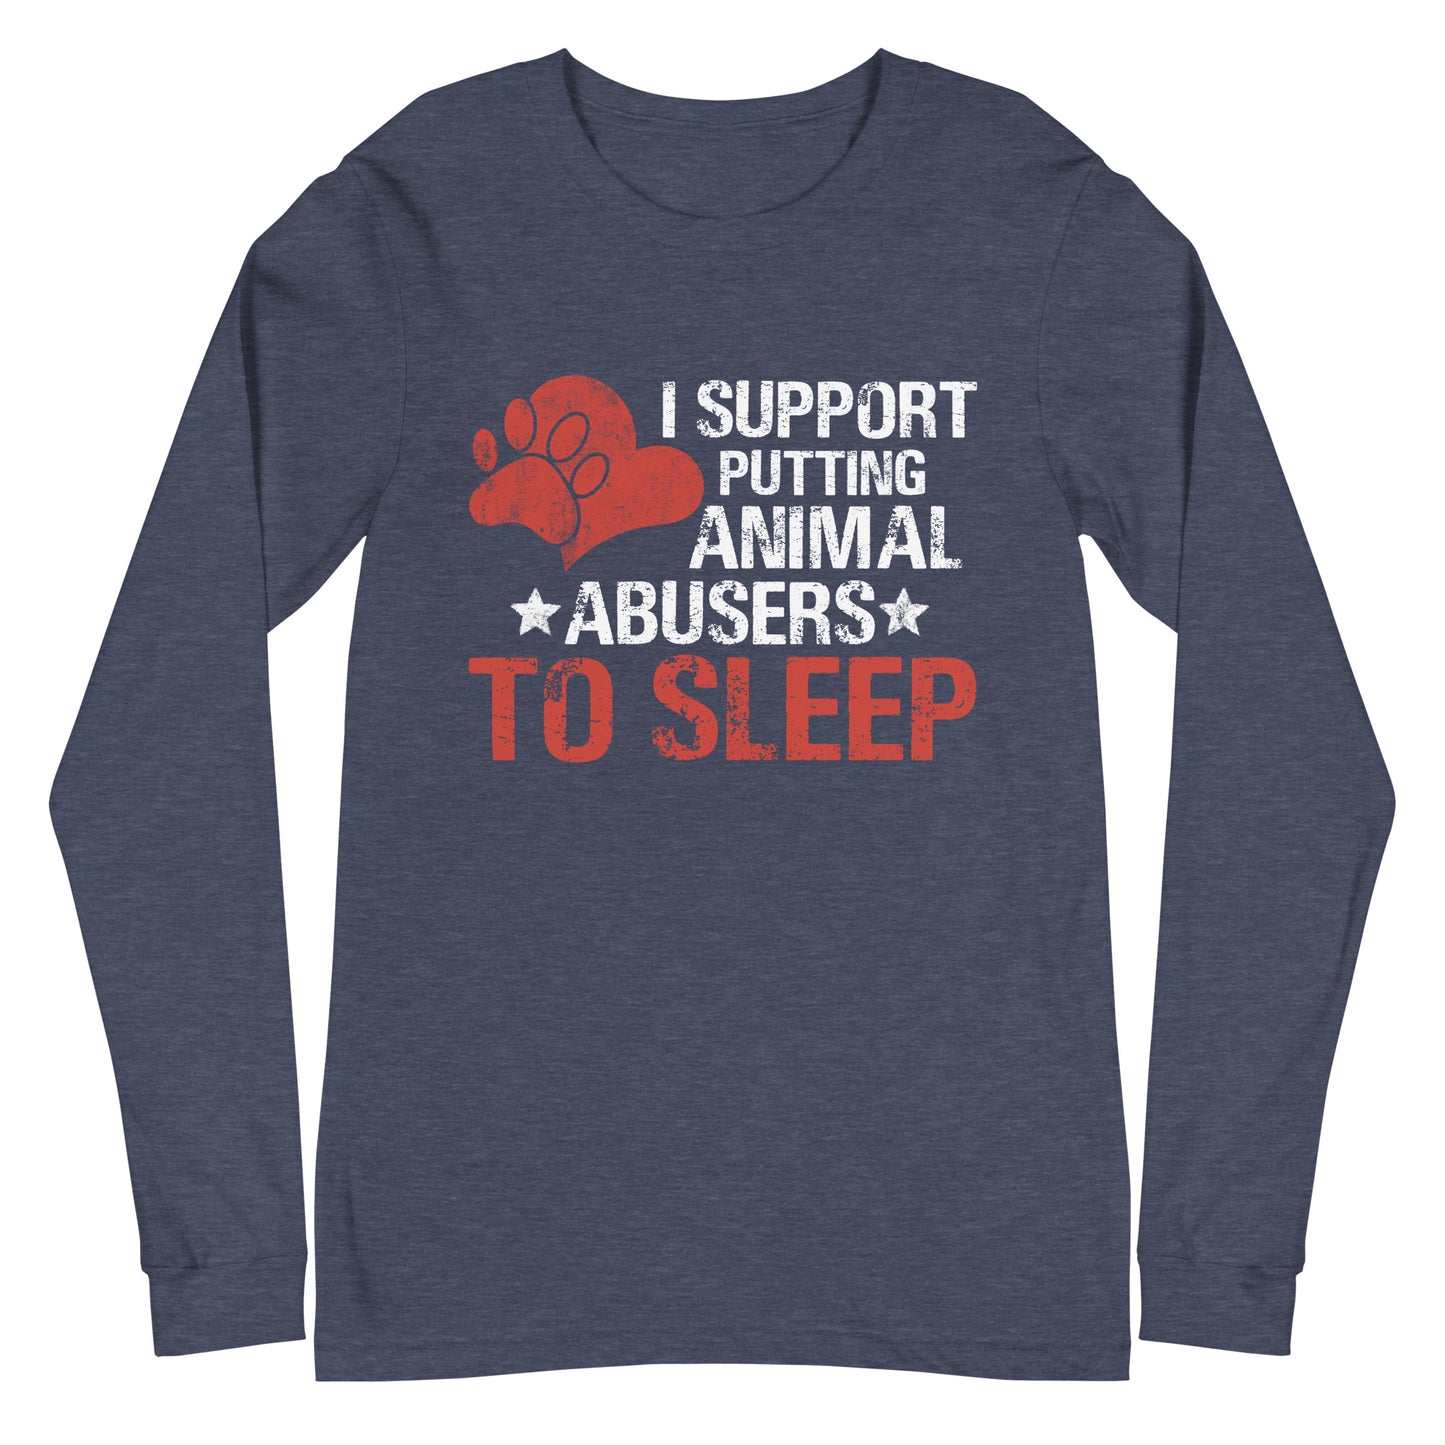 I Support Putting Animal Abusers to Sleep Unisex Long Sleeve Tee